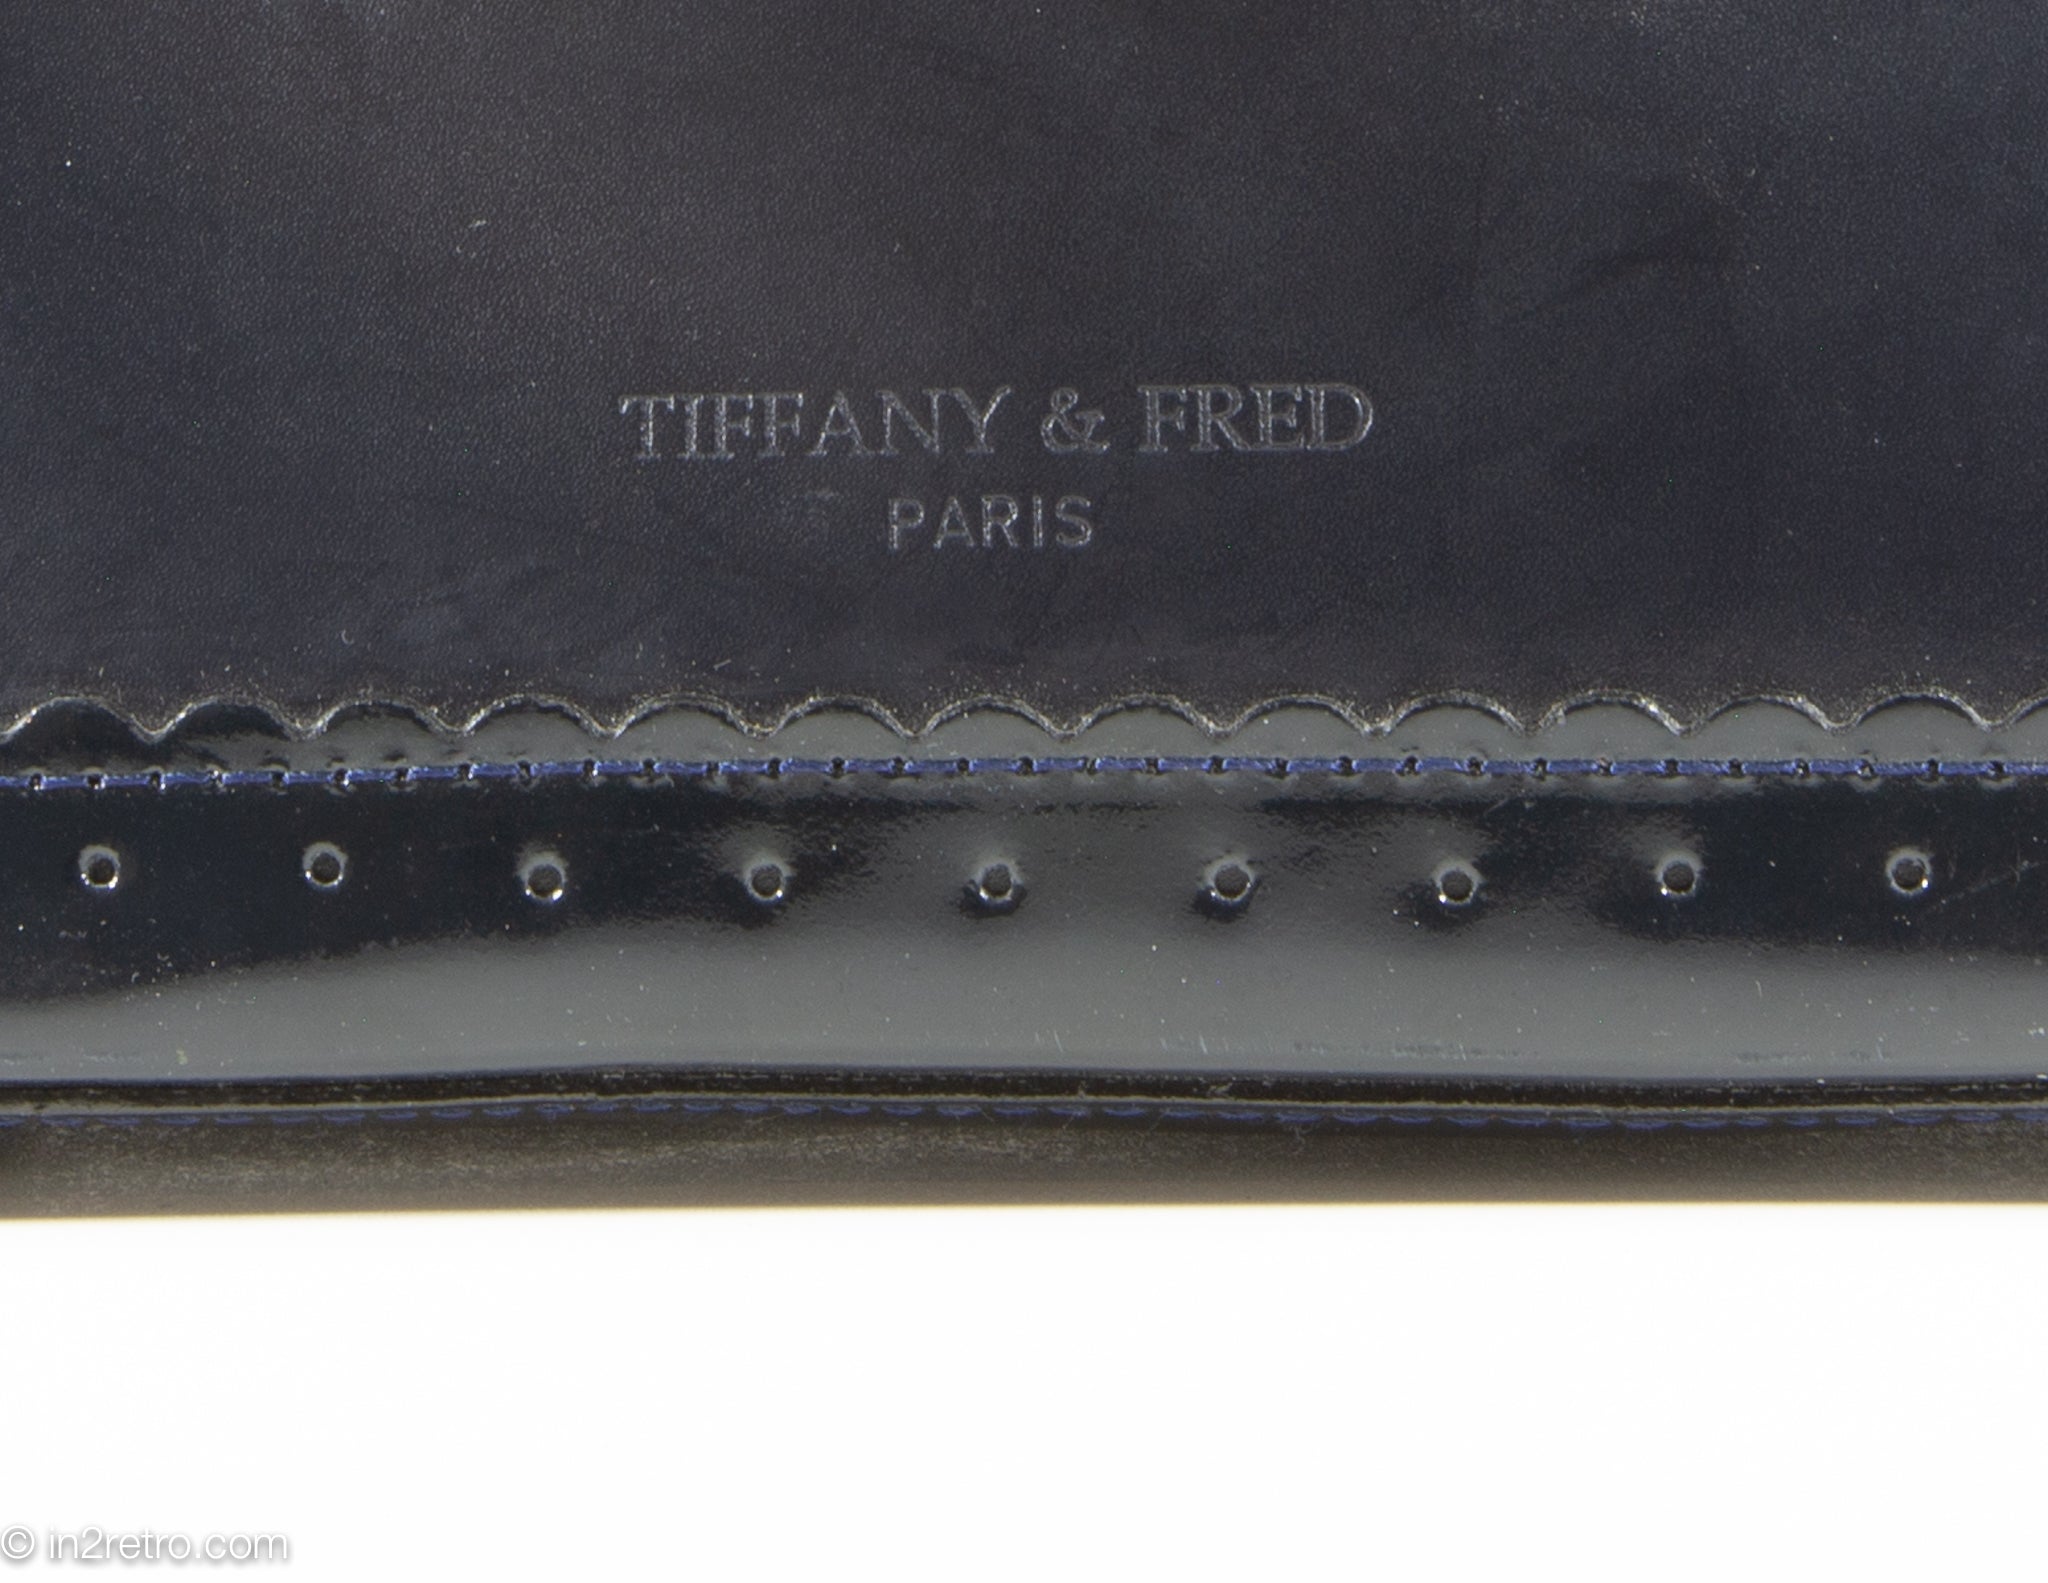 Tiffany & Fred Paris